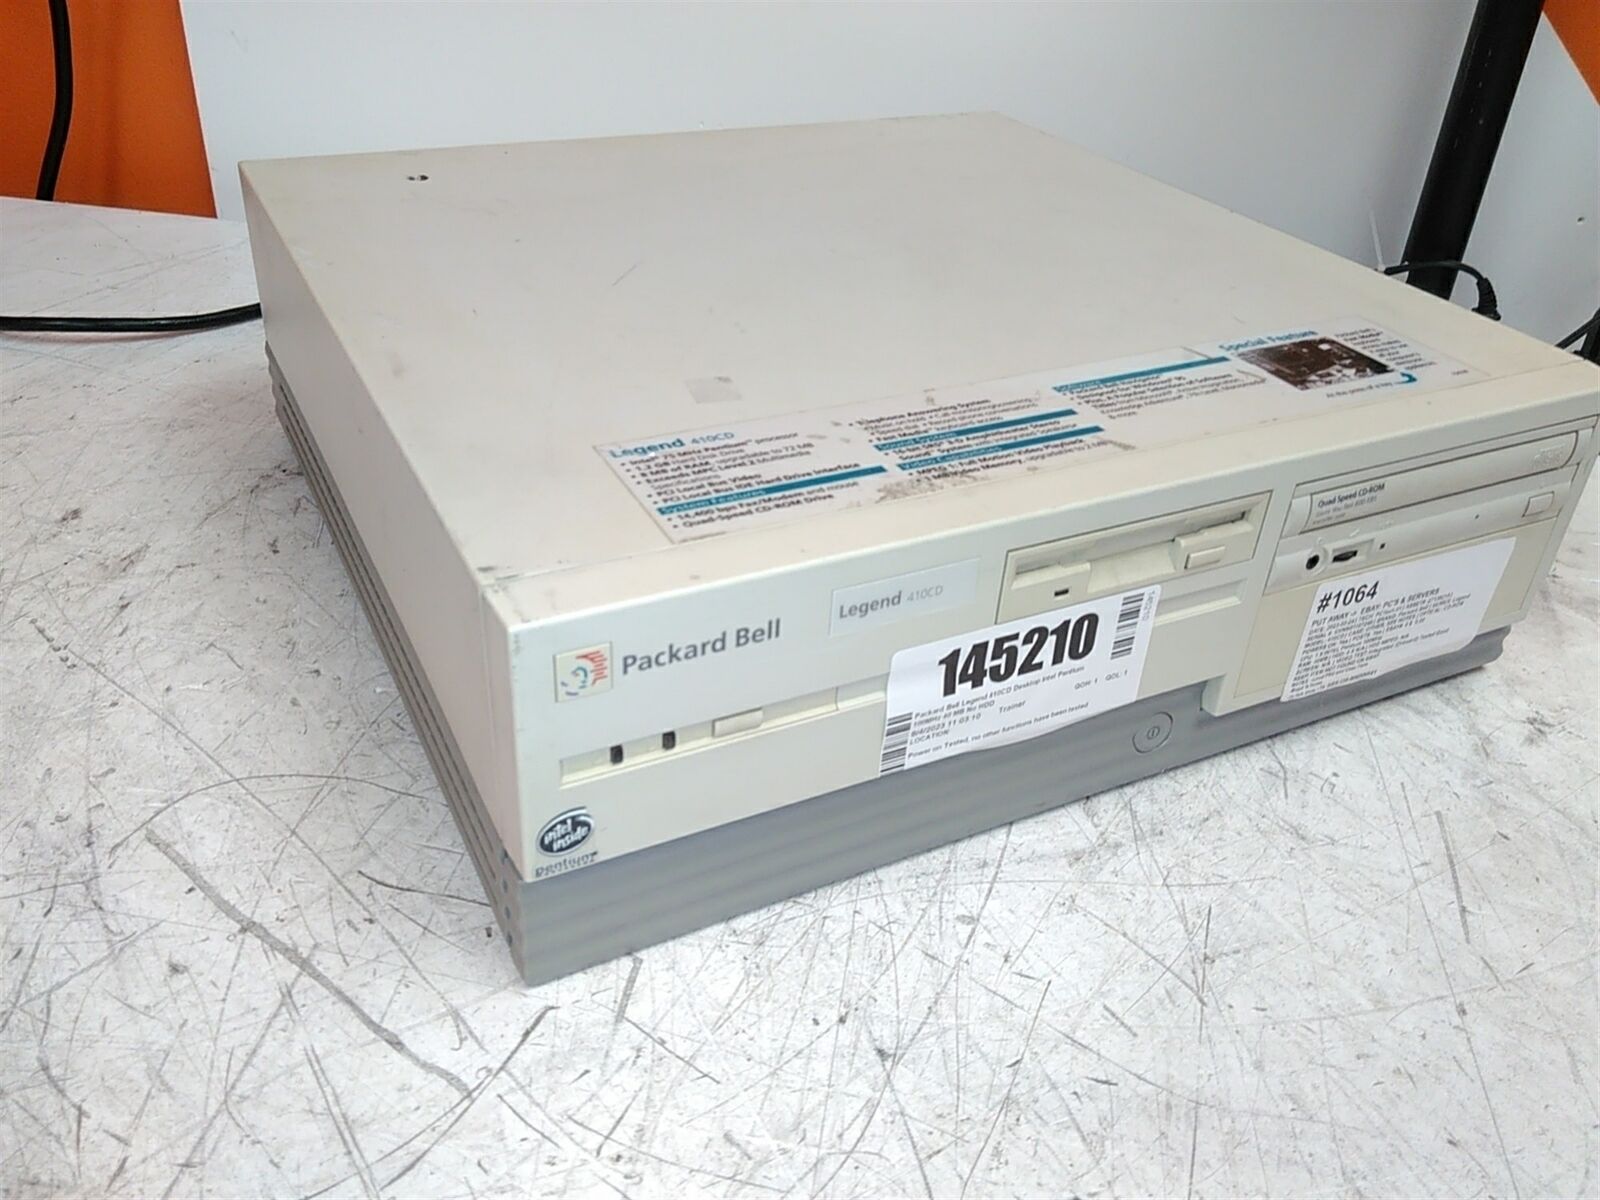 Packard Bell Legend 410CD Desktop Intel Pentium 100MHz 40 MB No HDD